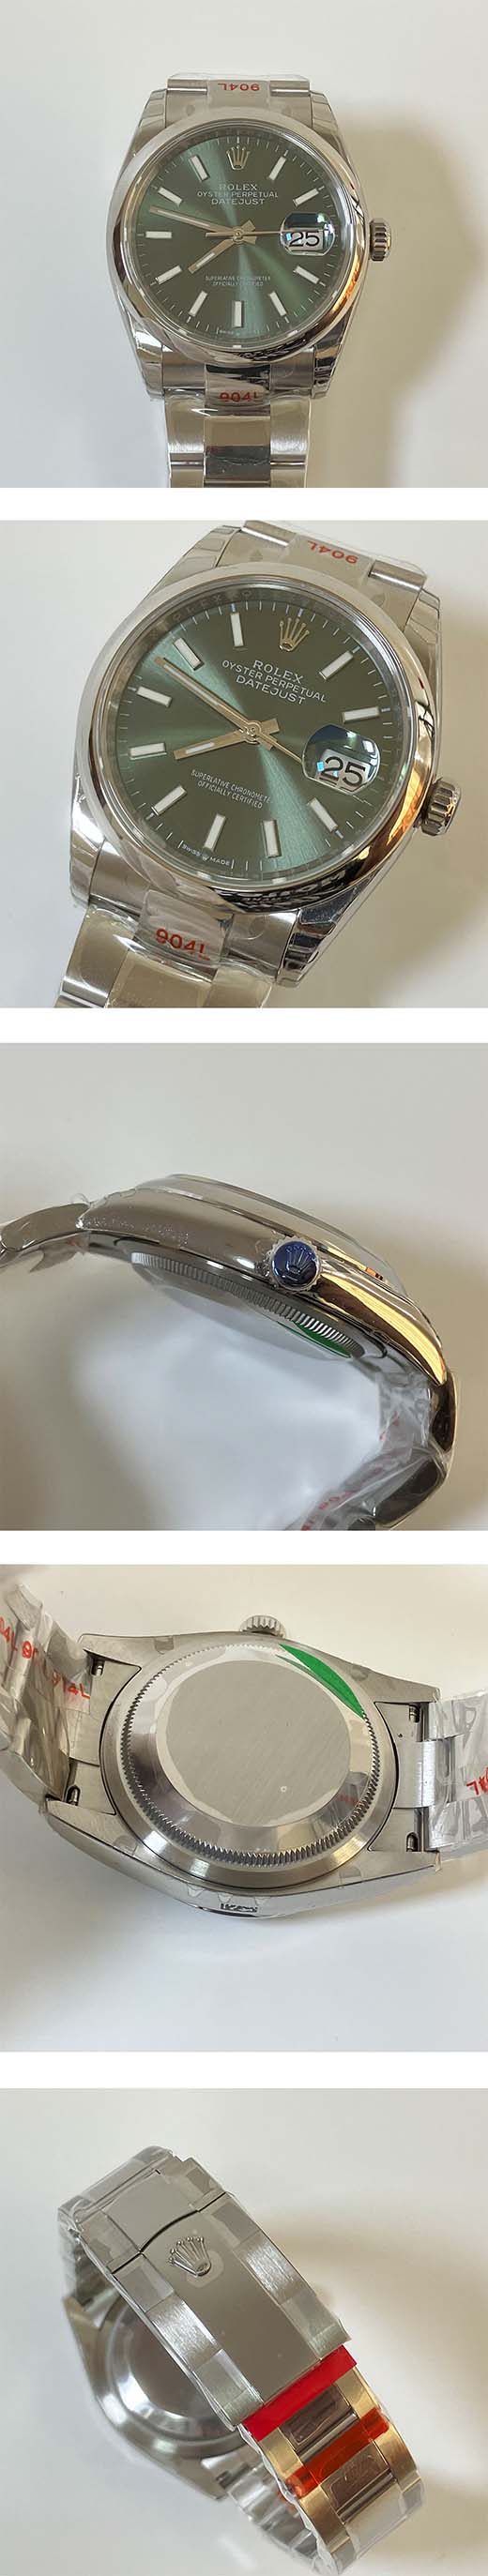 著名なブランド ロレックス デイトジャスト コピー時計の販売 M126200-0024、男性用腕時計